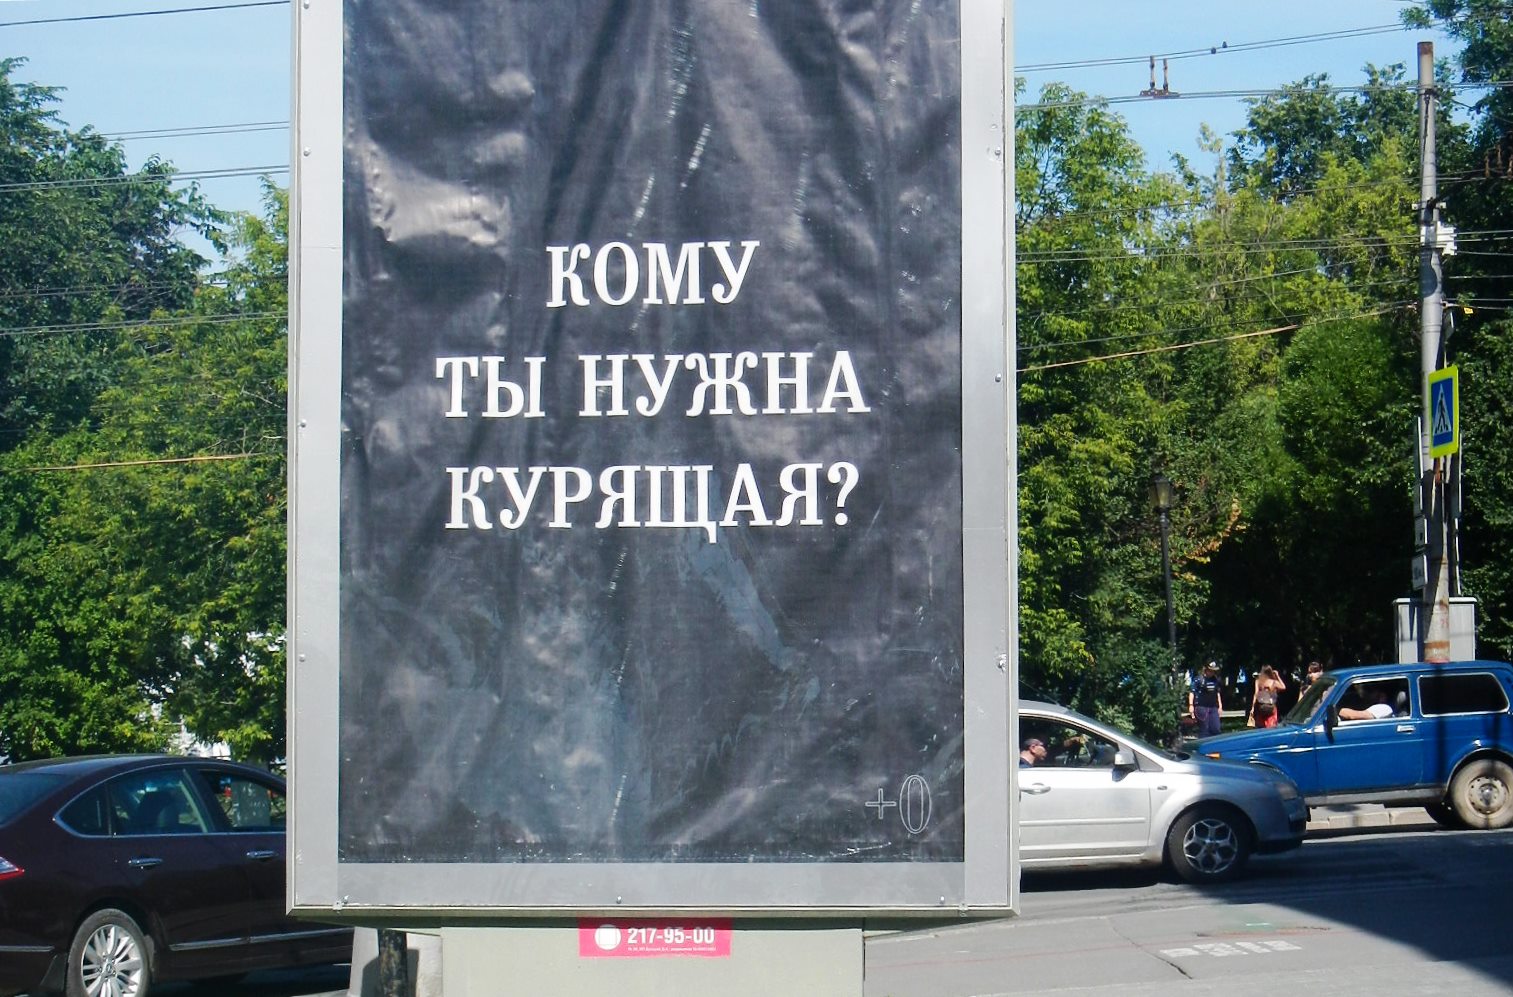 Скандальную рекламу «Кому ты нужна курящая?» в центре Перми проверит УФАС